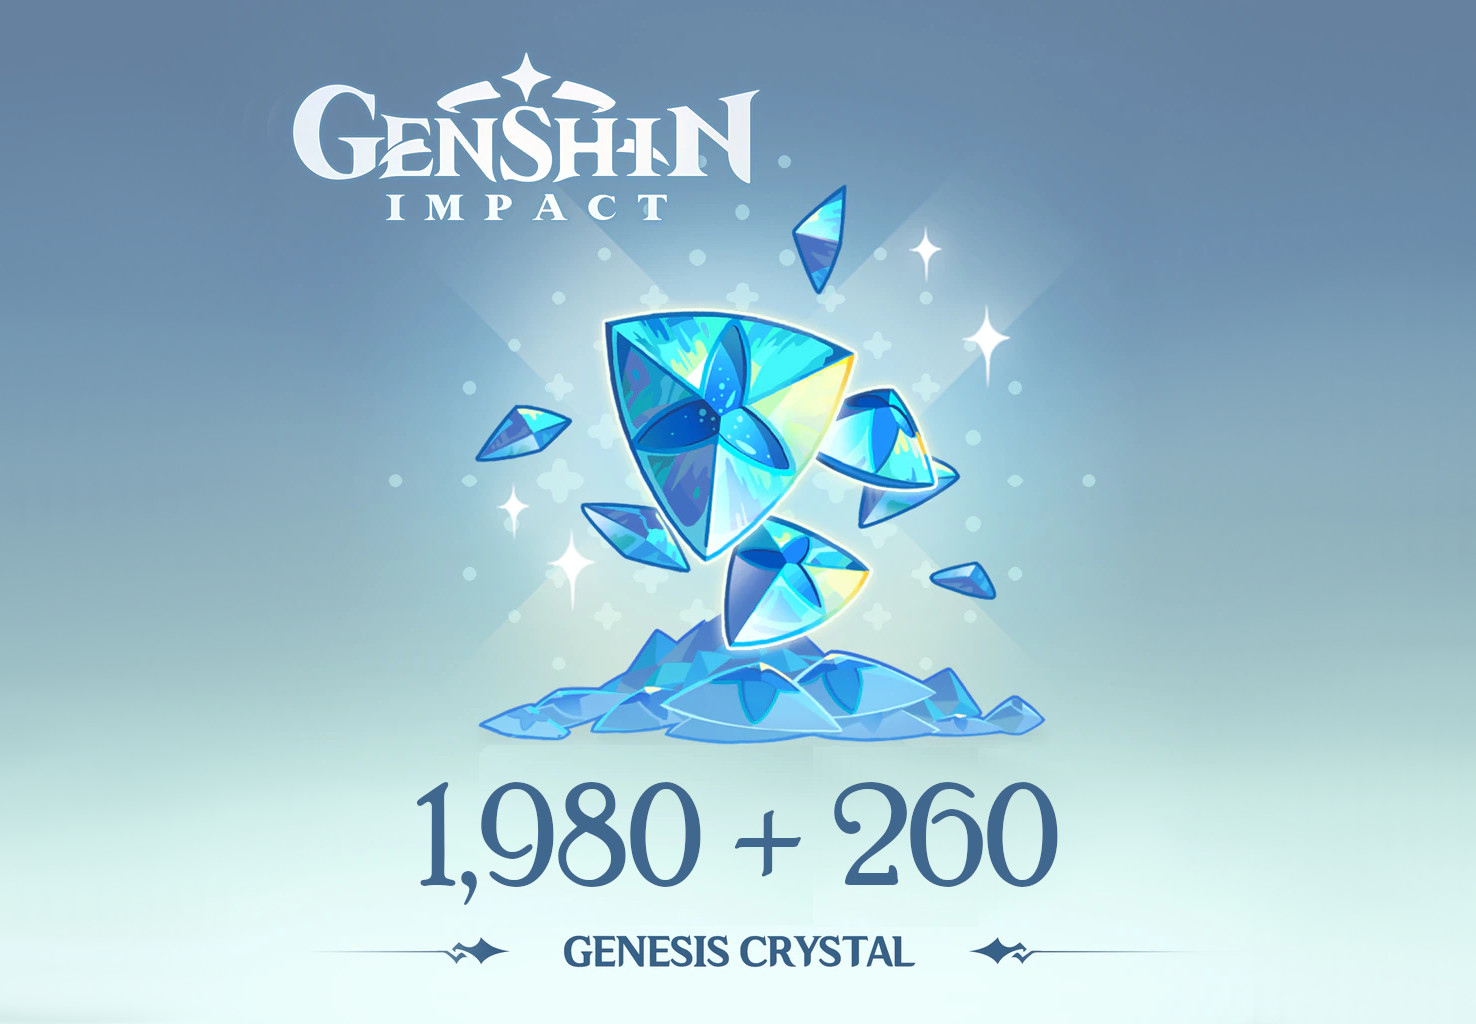 Genshin Impact - 1,980 + 260 Genesis Crystals Reidos Voucher $33.9